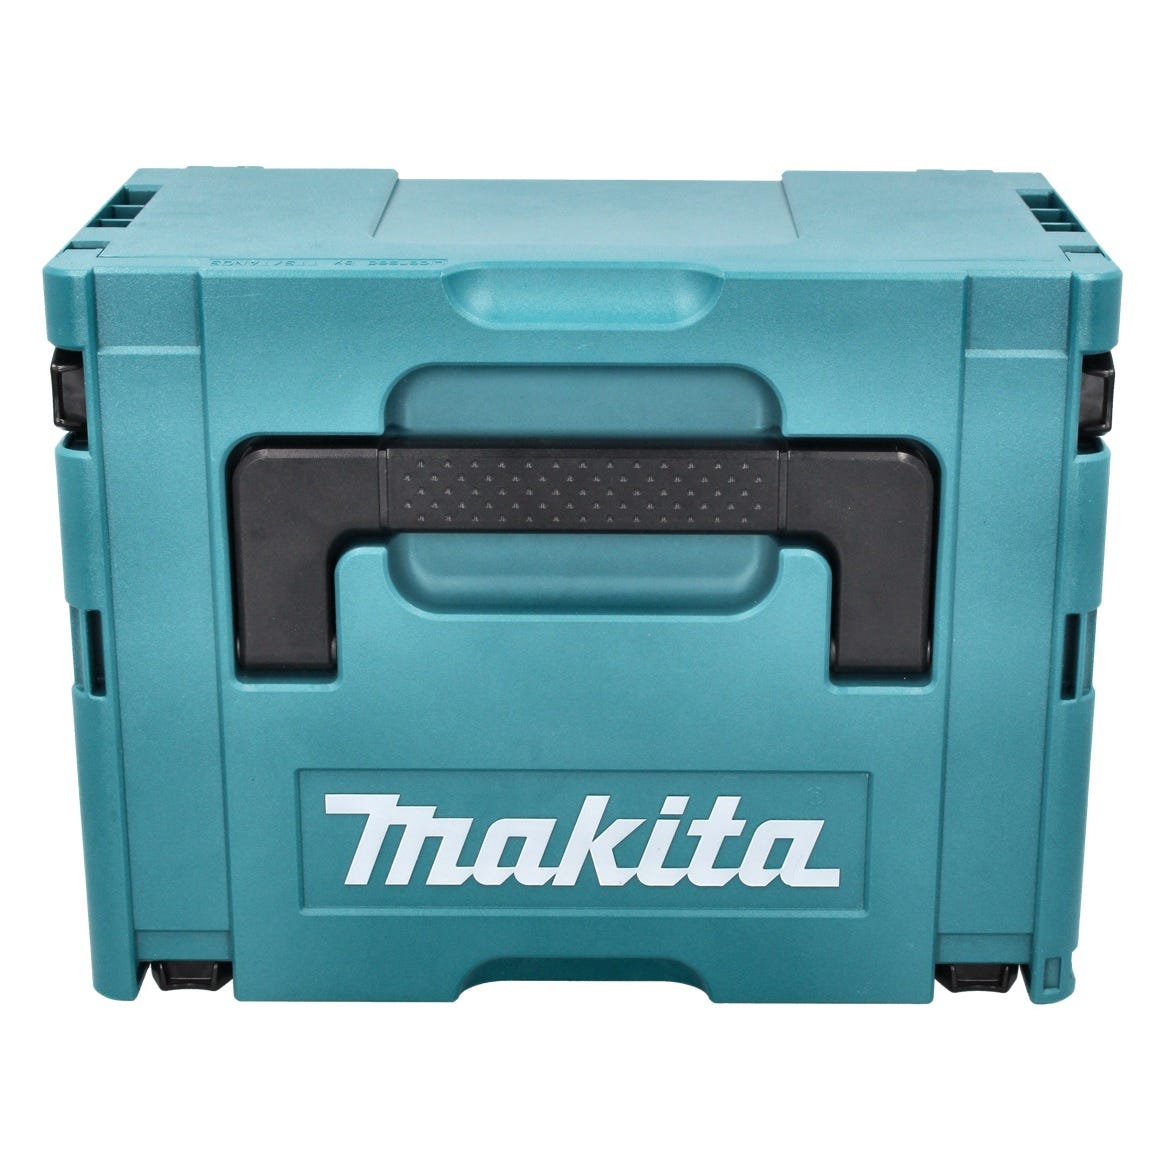 Makita DSS 610 RT1J Scie circulaire à main sans fil 18 V 165 mm + 1x Batterie BL 1850 B 5,0 Ah + Chargeur DC18RC + Coffret 2